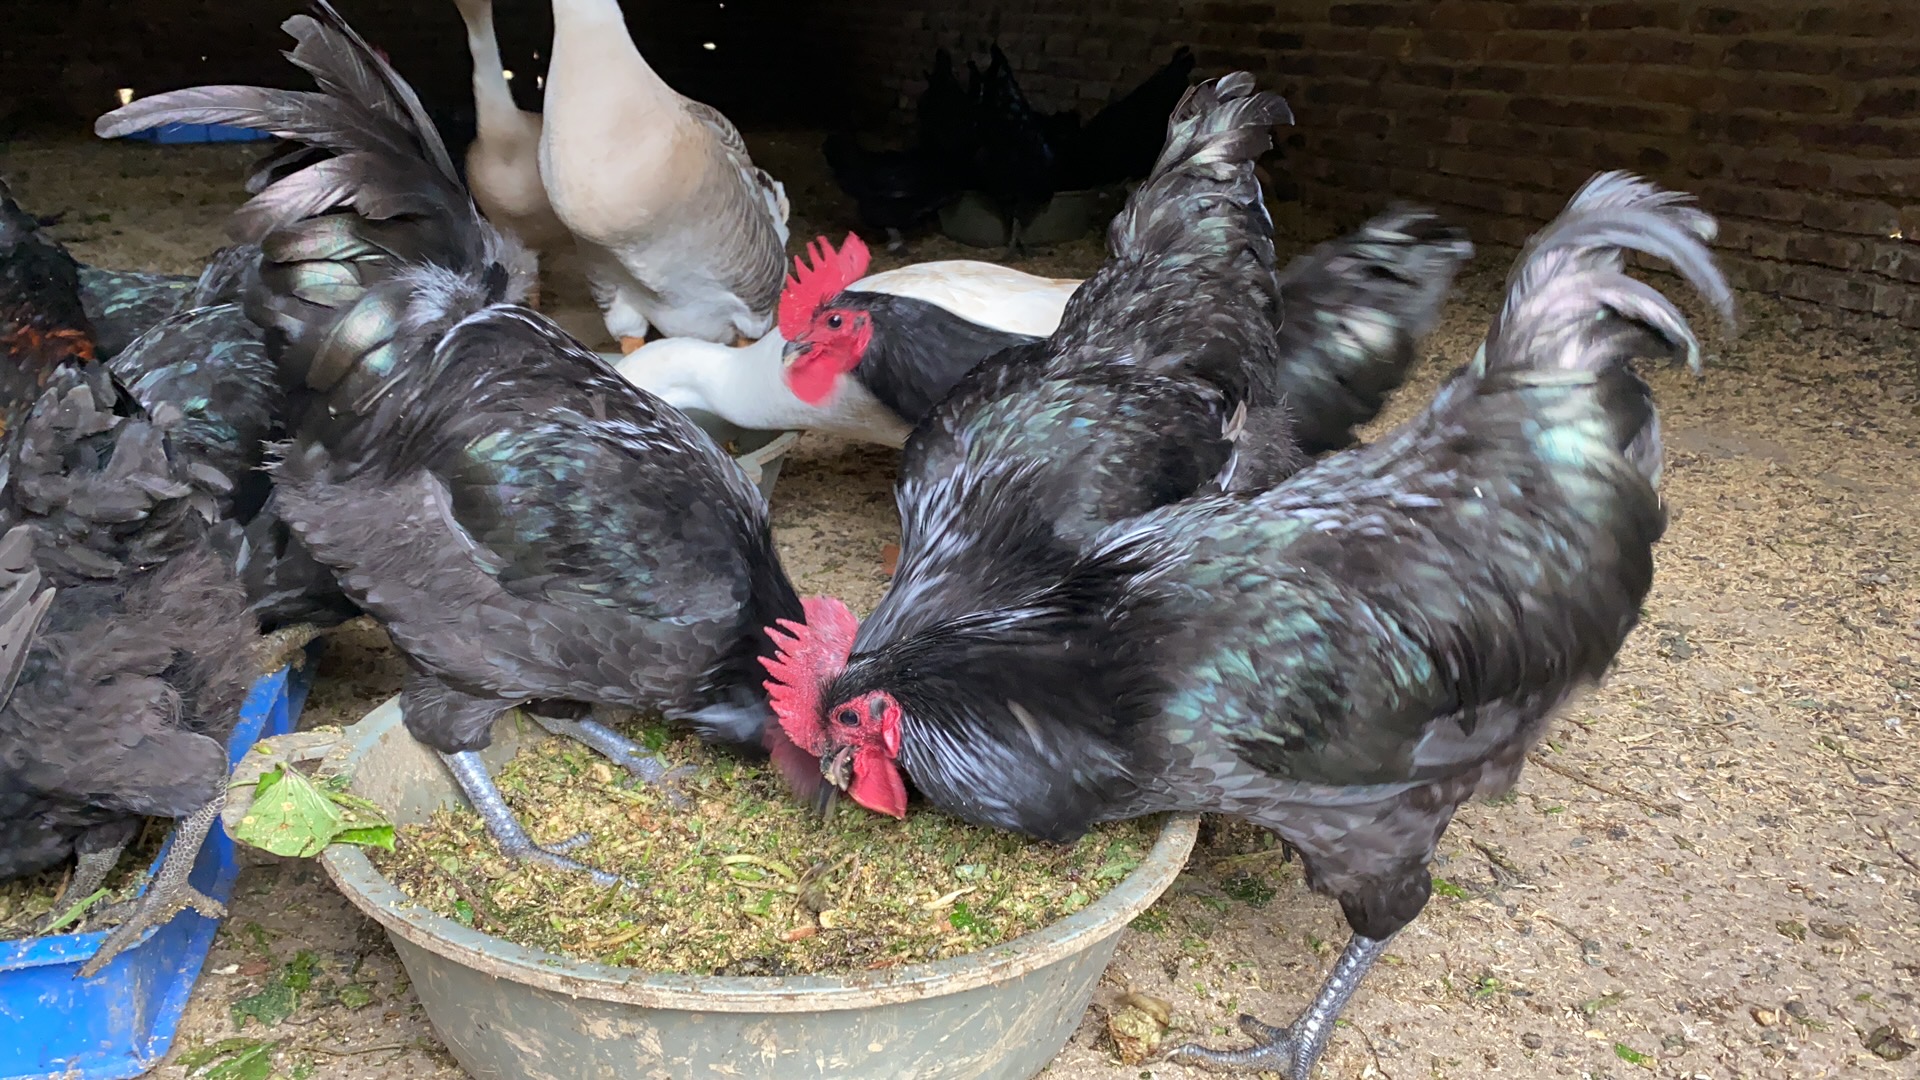 黑羽绿壳蛋鸡苗孵化场、供应高产黑羽绿壳蛋鸡苗、黑羽绿壳蛋鸡苗一手货源质量可靠免费提供养殖技术